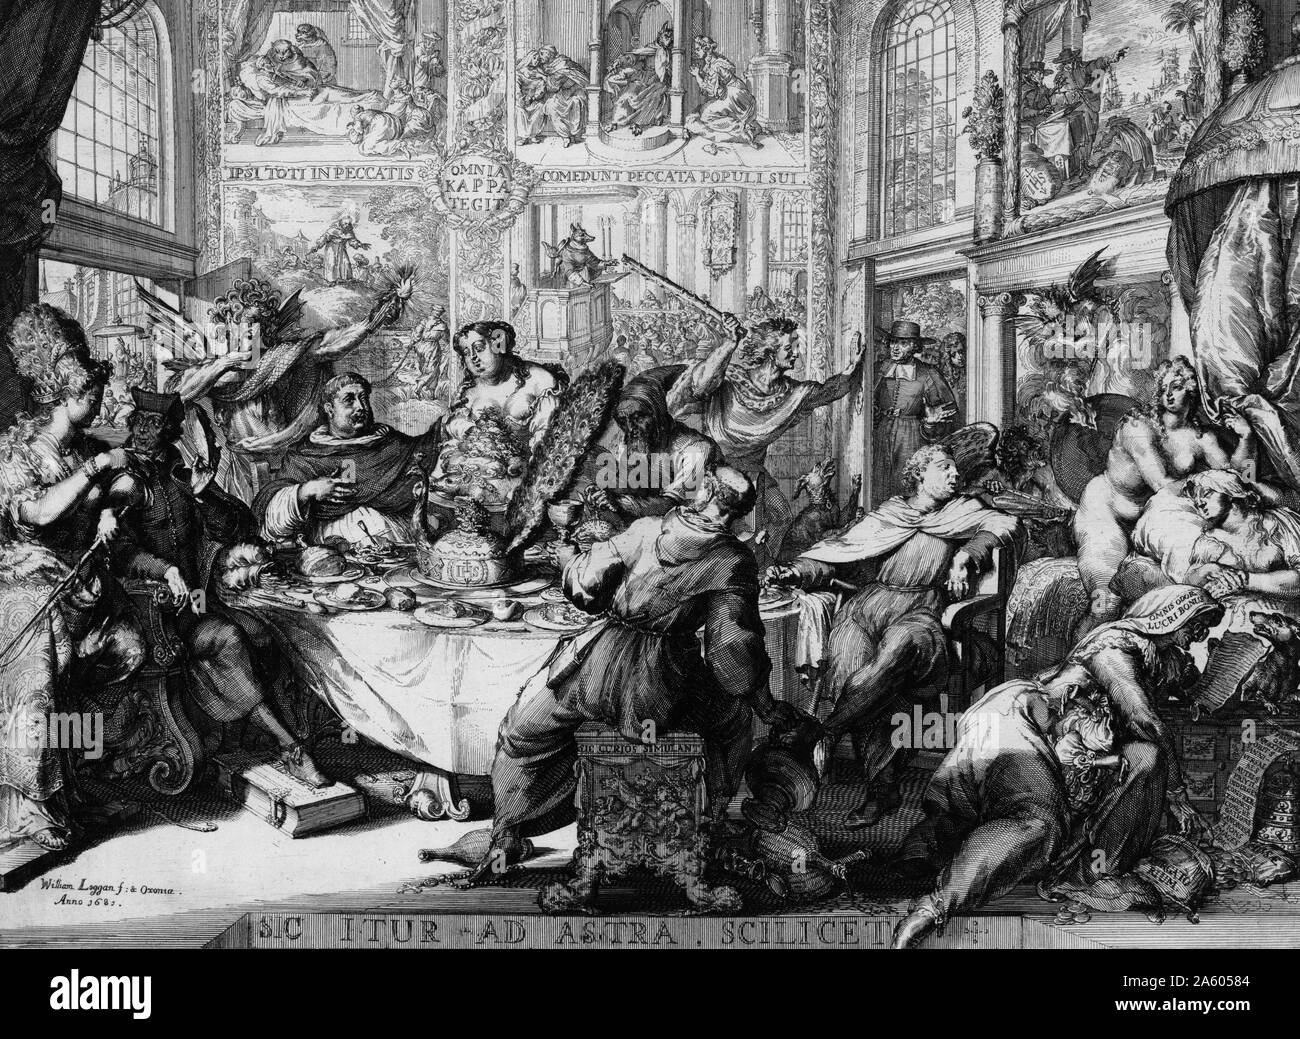 Sic itur Ad Astra scilicet 1681. Von Romeyn de Hooghe, 1645-1708, Künstler. Drucken zeigt Szene in einem frivolen Haus der Freude von Pater Petre und anderen Jesuiten, wo sie vermischen und speisen Sie mit Figuren wie: Unzucht, Geiz, Trägheit, Zorn, und Eitelkeit frequentiert. Priester engagieren sich in lasziven Handlungen und Geld von einer sterbenden Person stehlen, ein protestantischer Geistlicher weg von der Tür angetrieben wird, ein Fuchs hält eine Predigt von der Kanzel, und Jesuiten helfen, sich selbst zu schätzen in Indien. Stockfoto